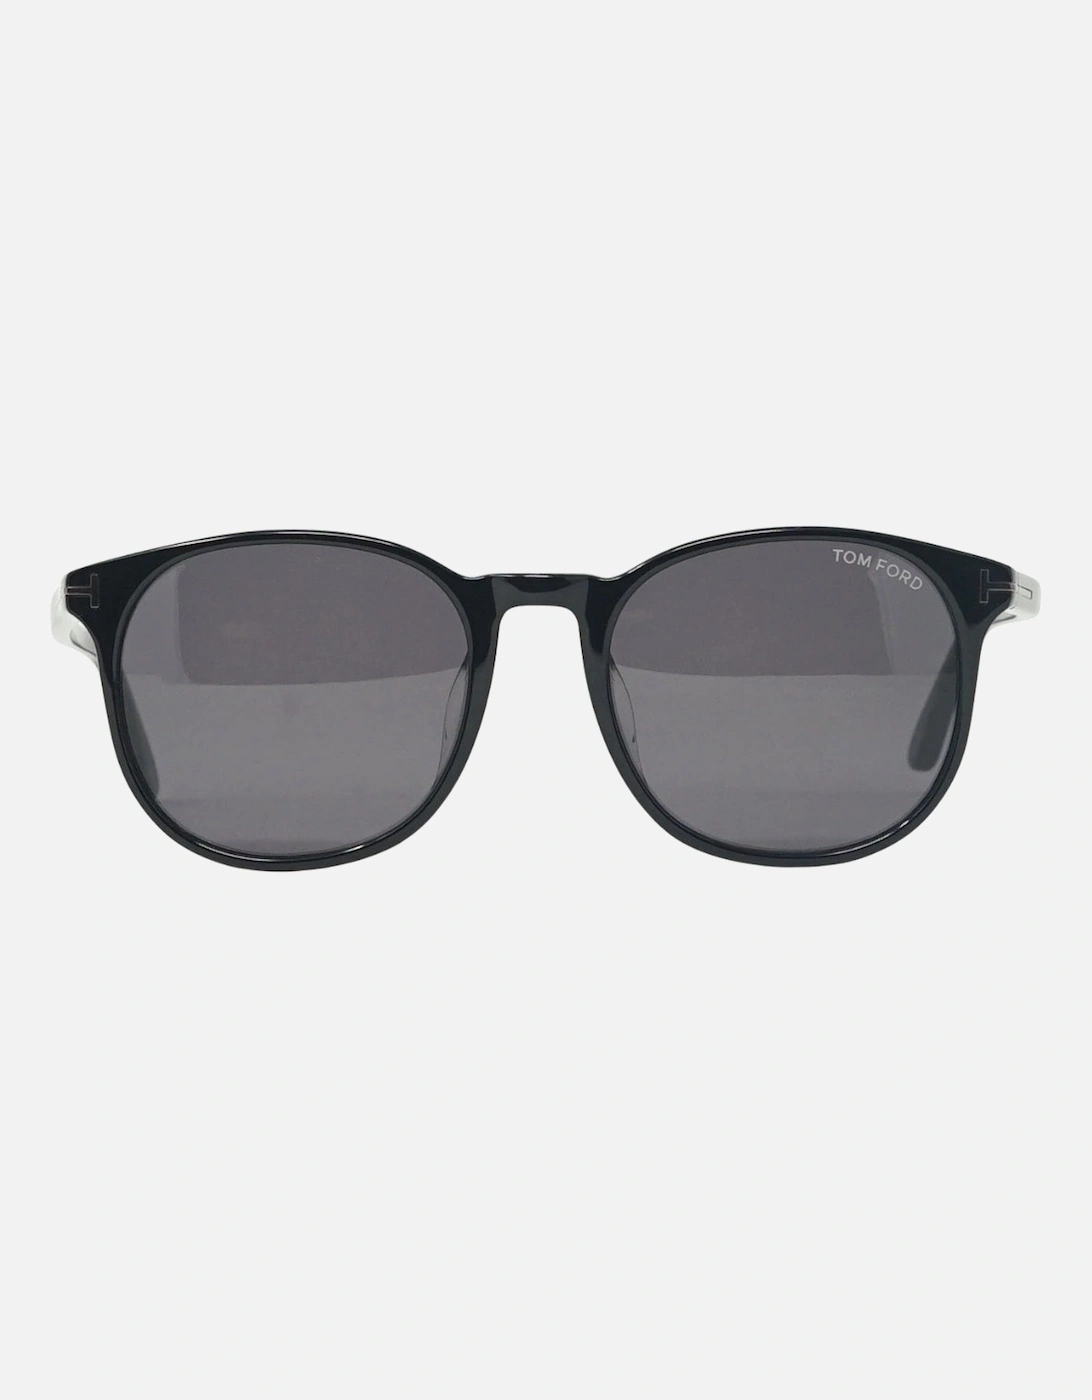 Ansel FT0858-F-N 01A Black Sunglasses, 4 of 3